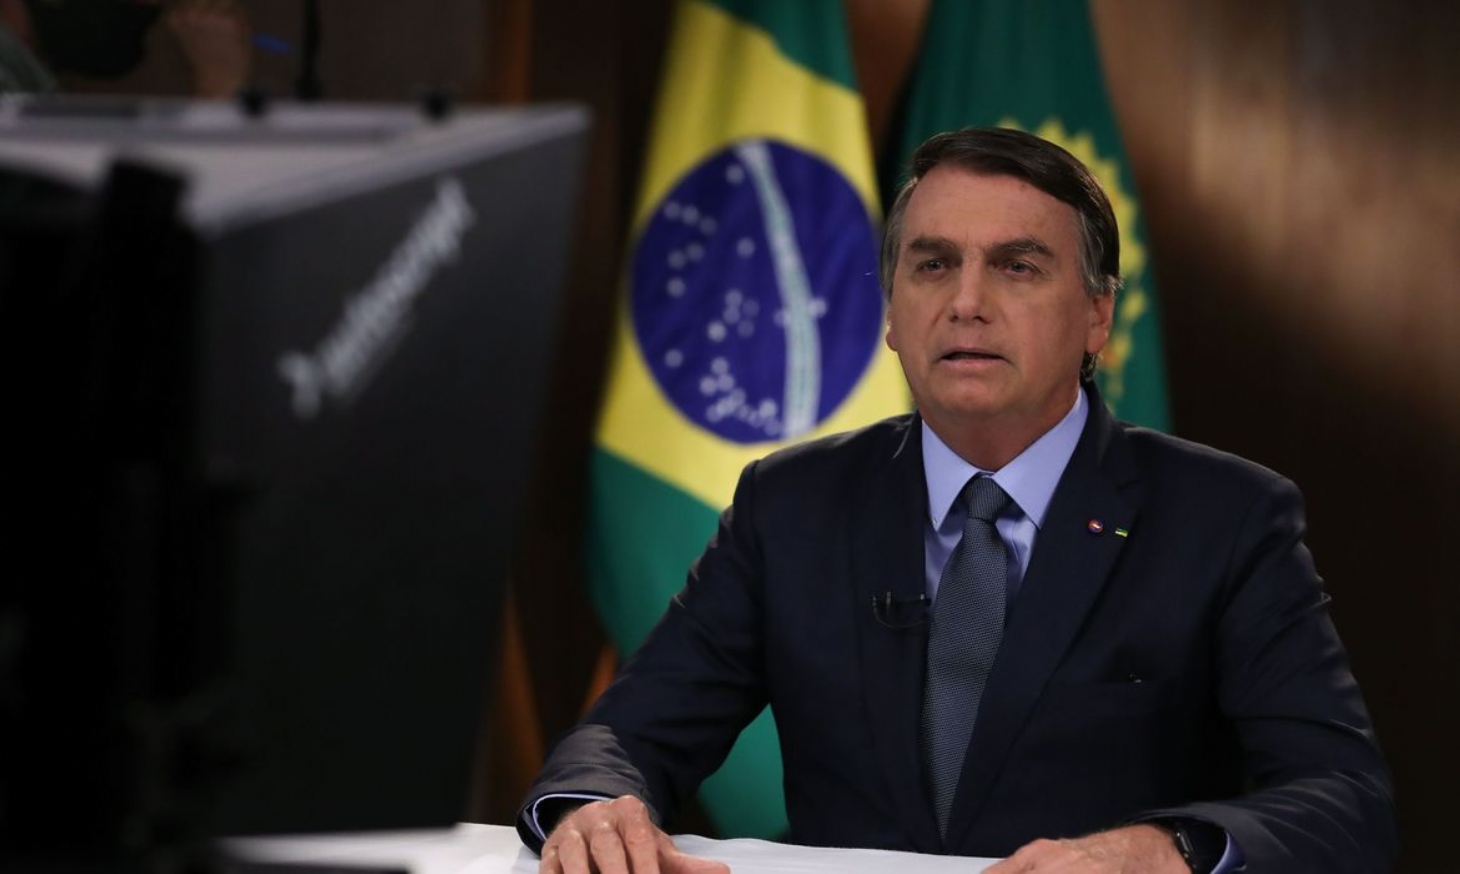 Brasil é vítima de desinformação sobre meio ambiente, diz Bolsonaro | Jornal da Orla